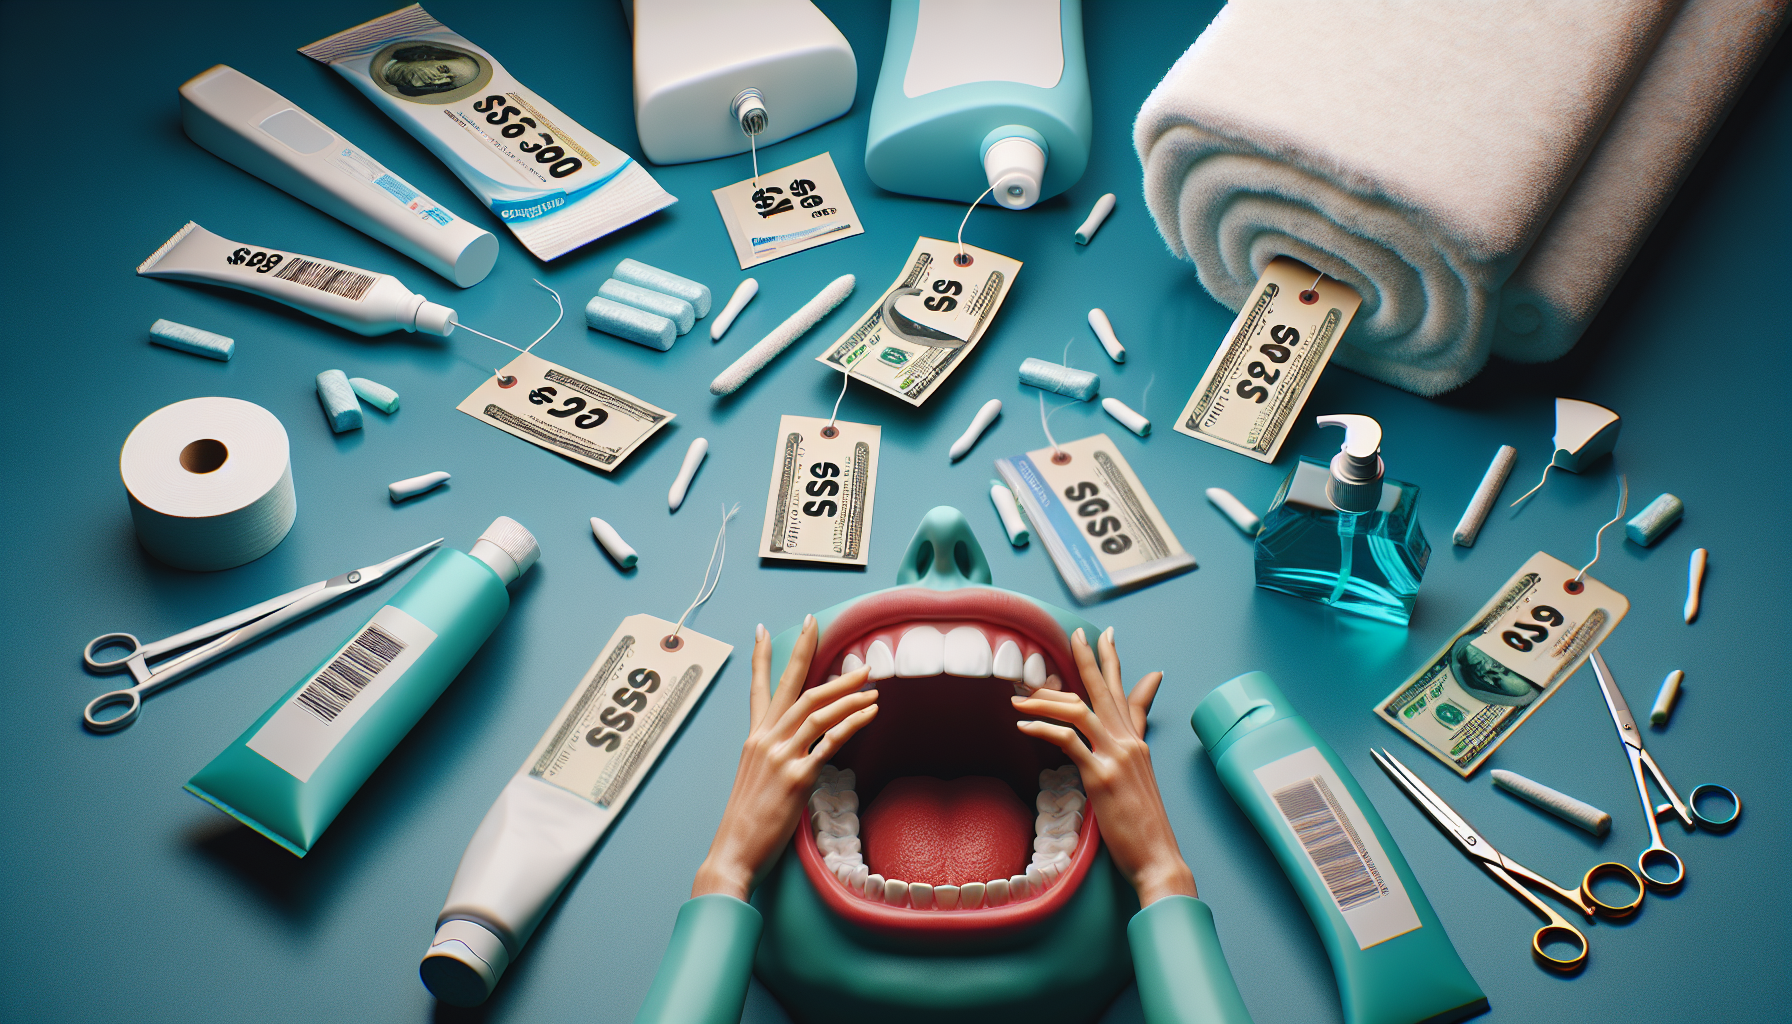 découvrez pourquoi les prix flambent et comment cela impacte votre santé dentaire. une raison choquante à connaître !